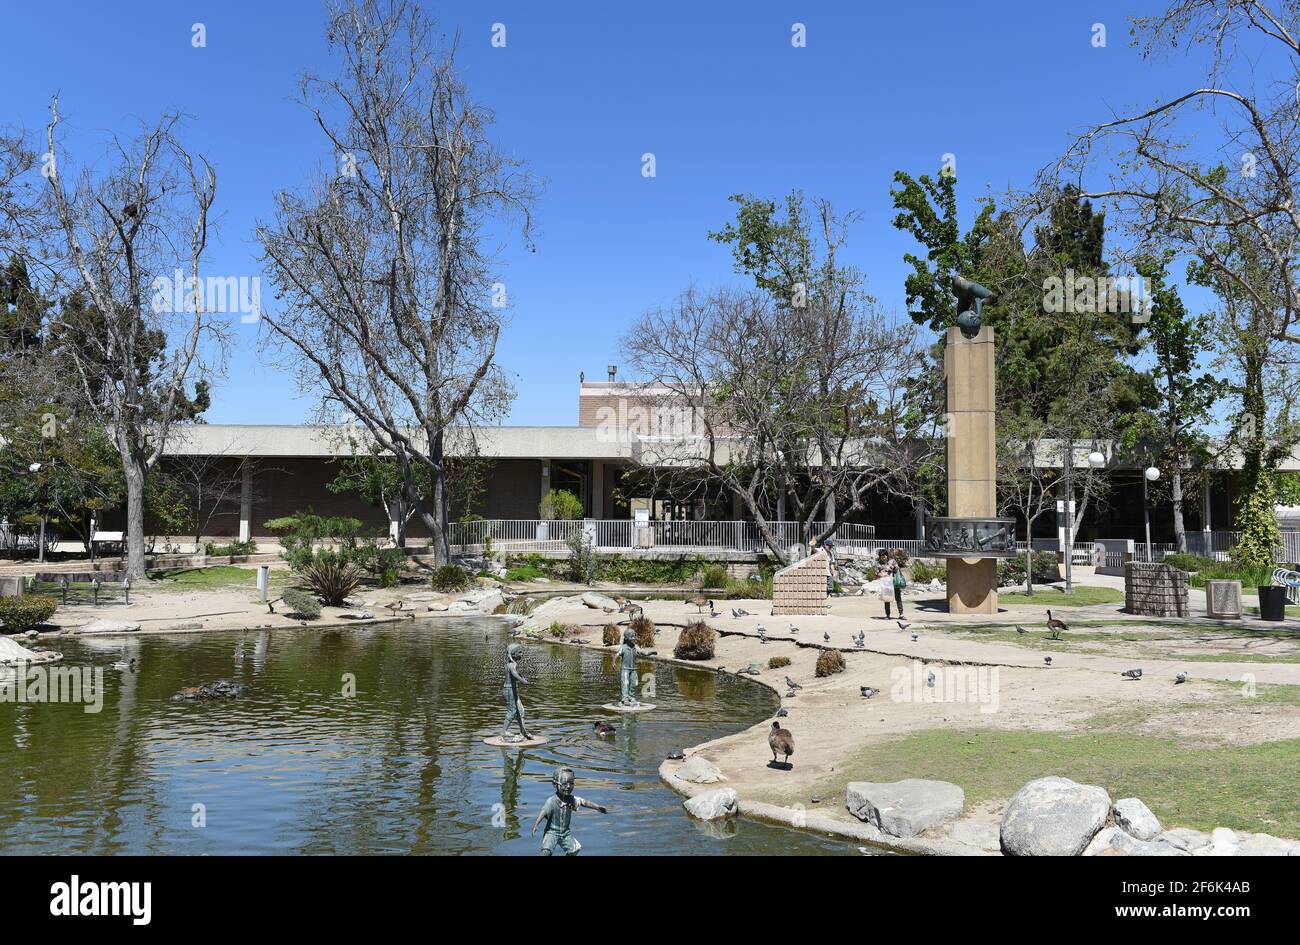 GARDEN GROVE, CALIFORNIE - 31 MARS 2021 : la bibliothèque principale du Community Center Park avec son étang et ses sculptures. Banque D'Images